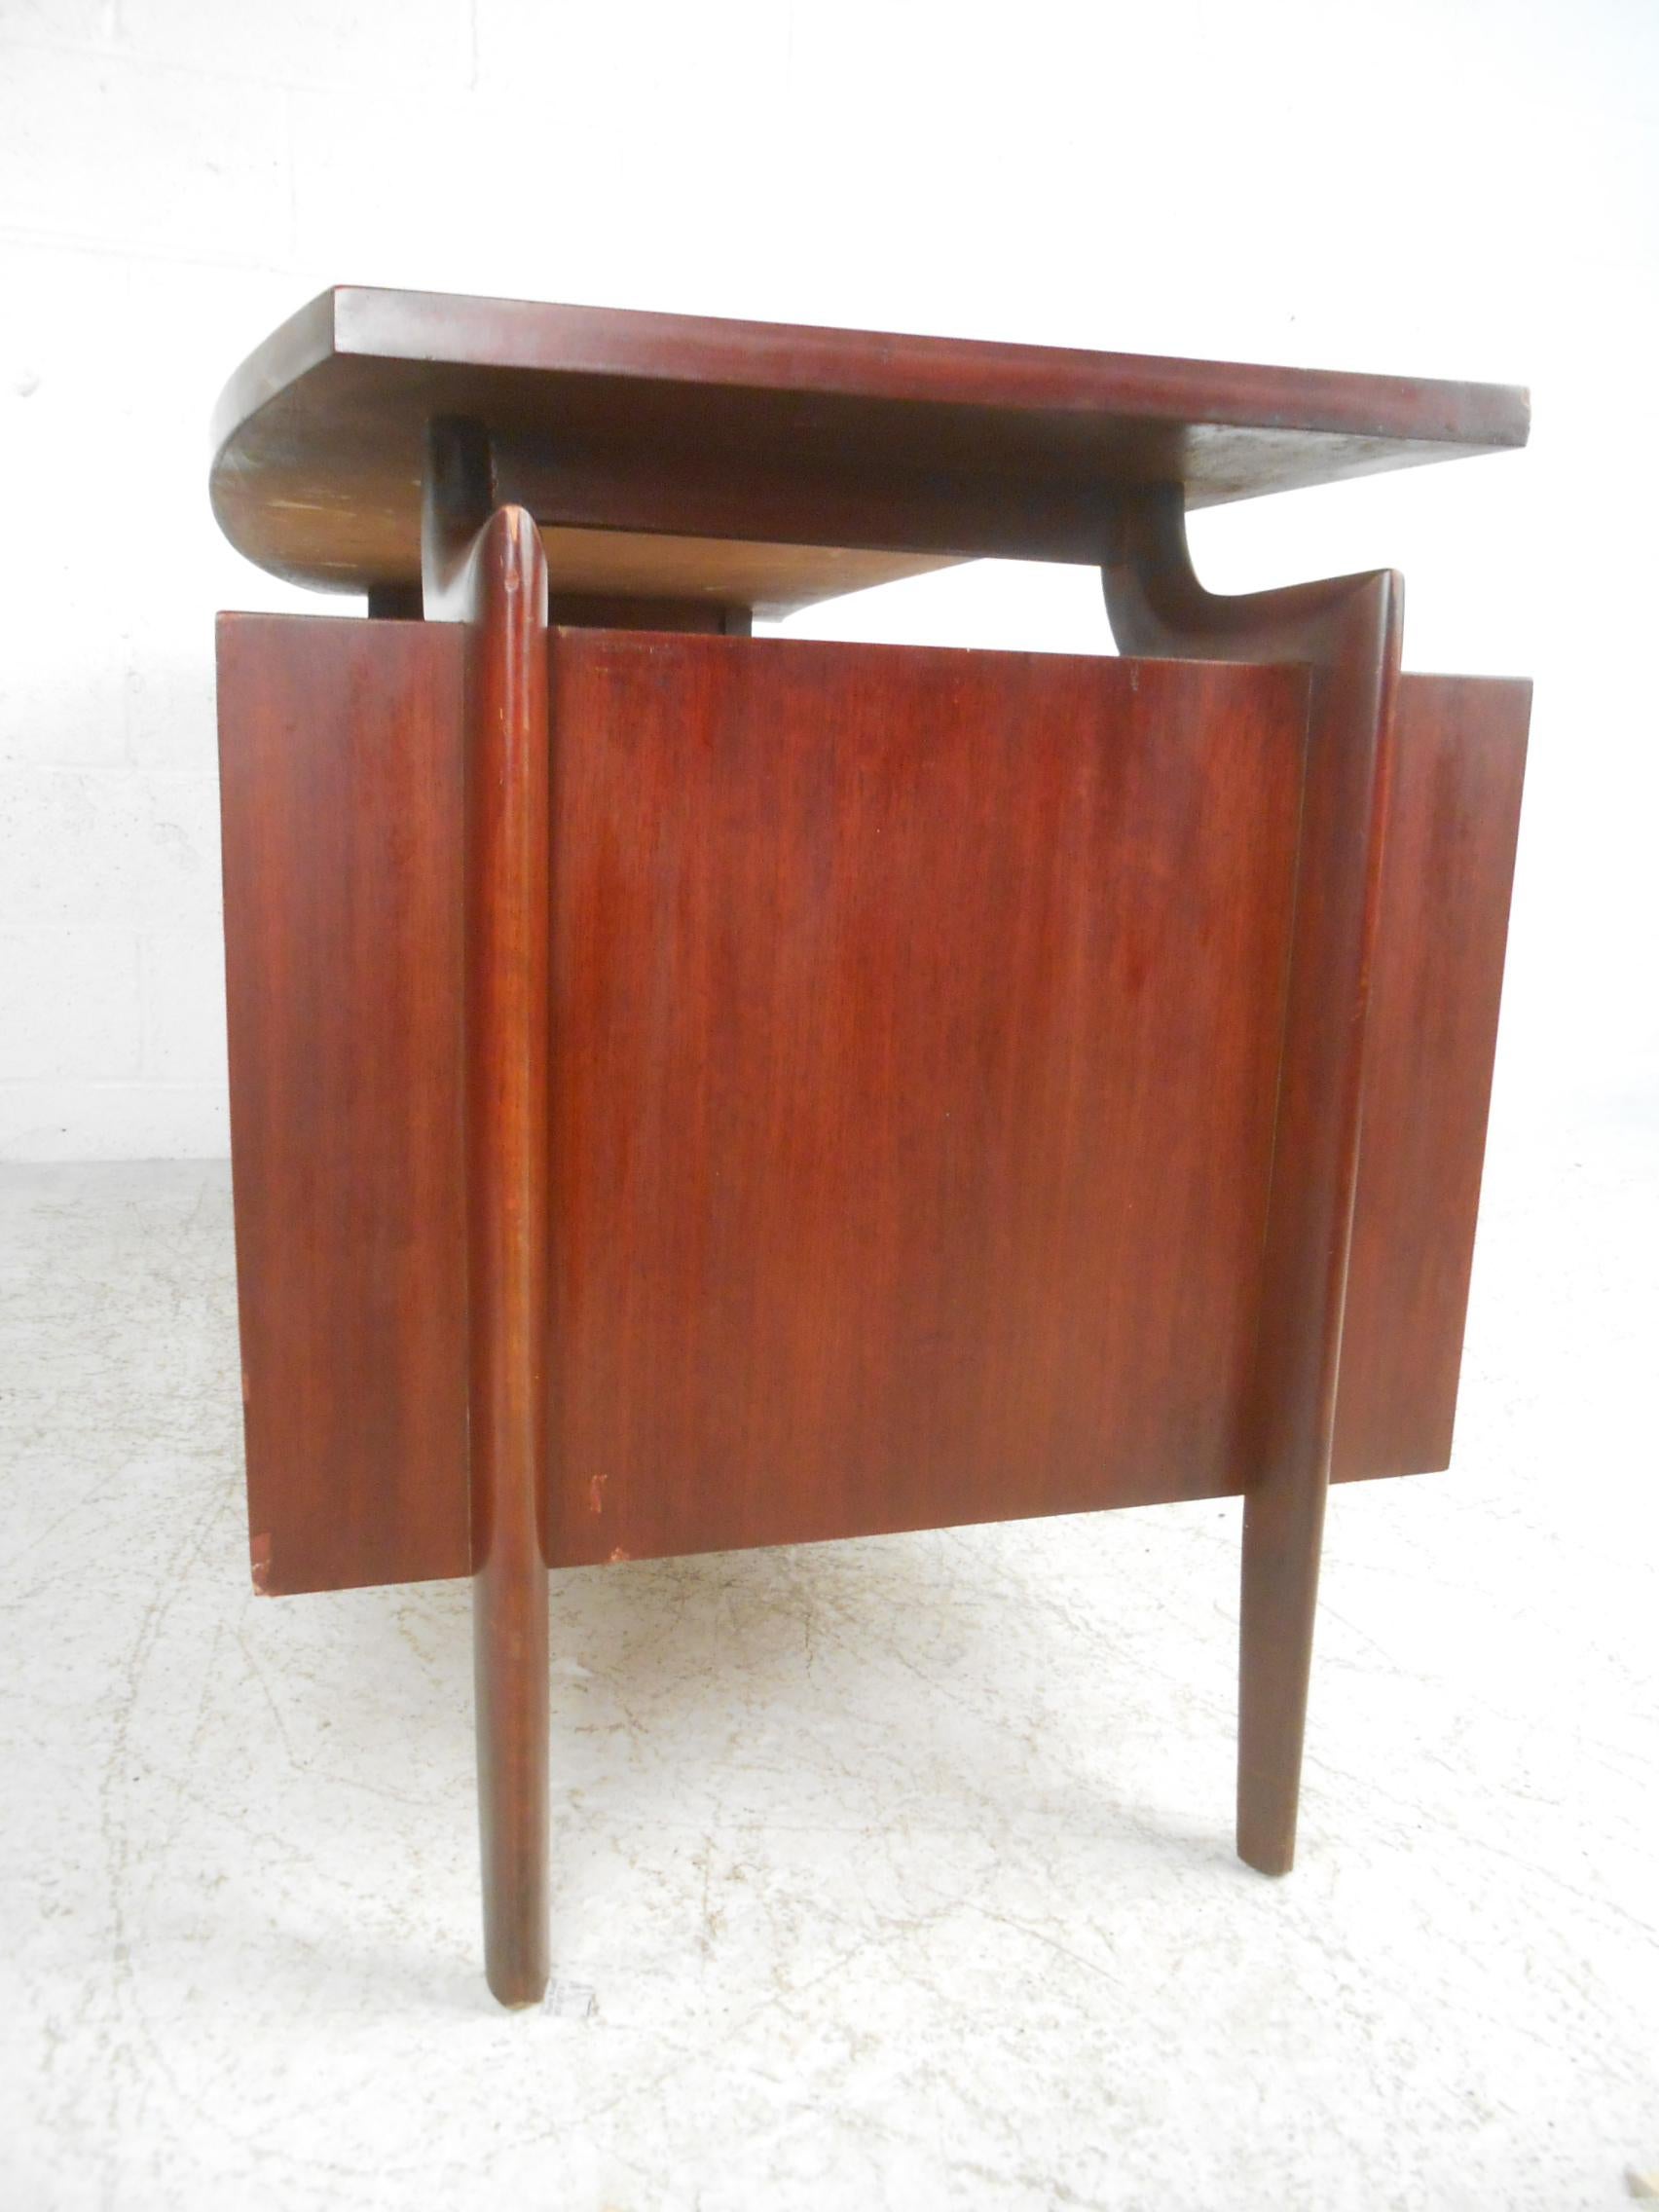 Mid-Century Modern Schreibtisch von Tri Bond Furniture, mit schwebender Platte und bearbeiteter Rückseite.
Bitte bestätigen Sie den Standort NY oder NJ.